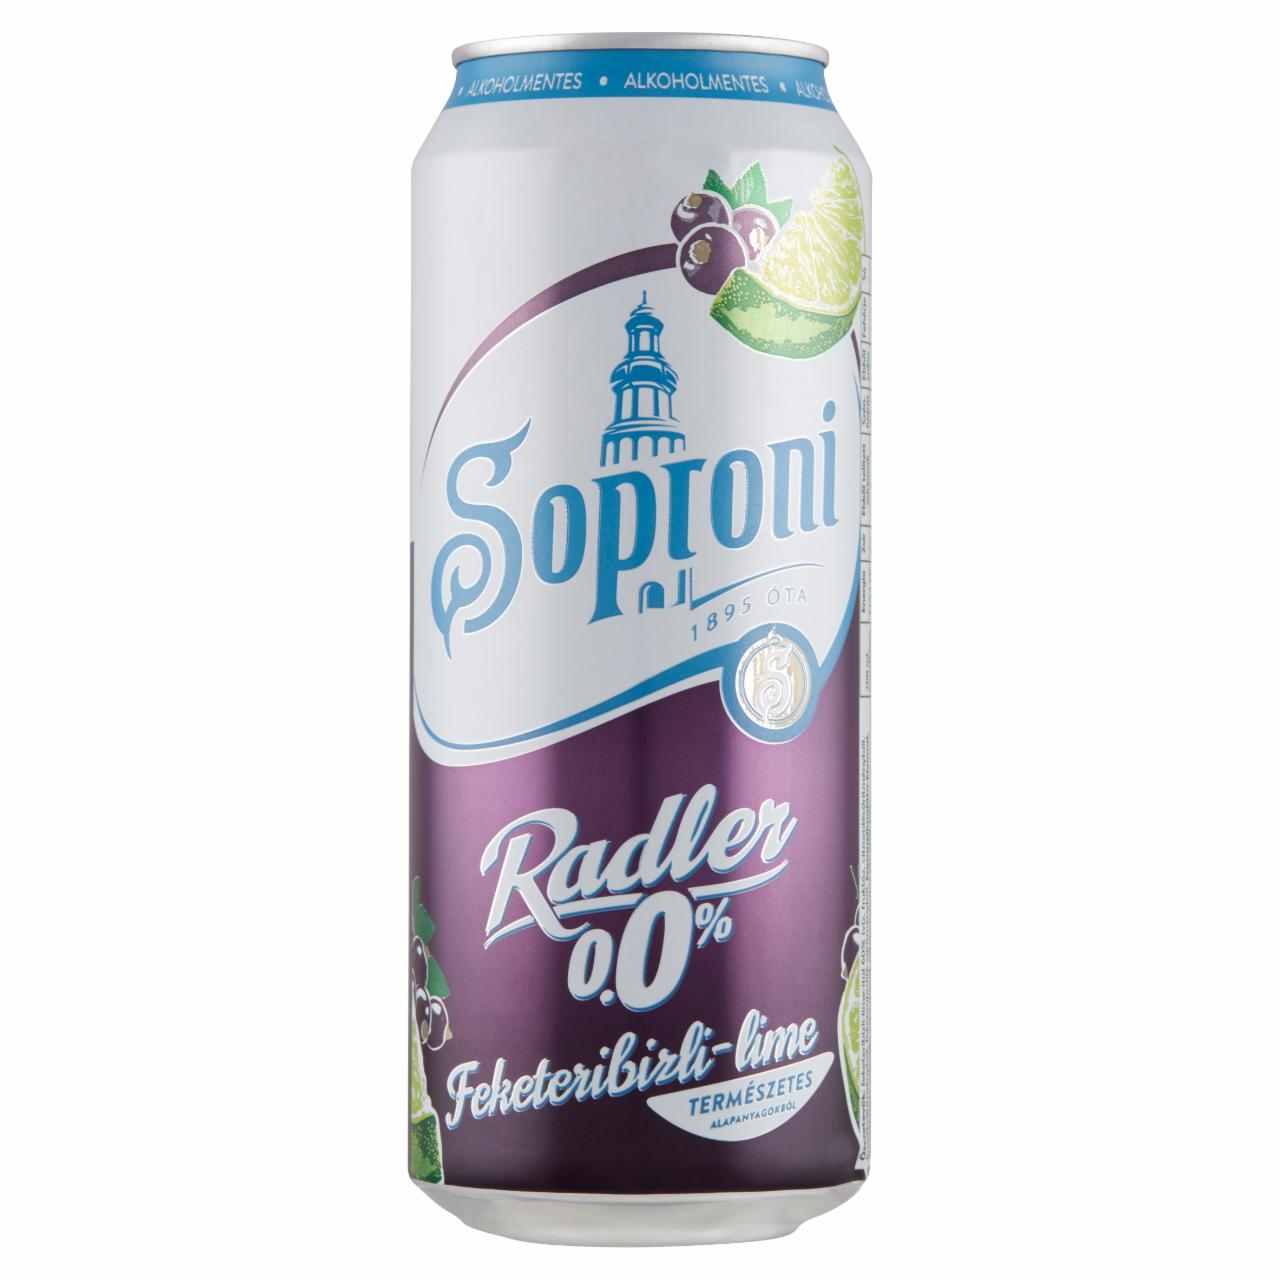 Képek - Soproni Radler feketeribizli-lime-os alkoholmentes sörital 0,0% 0,5 l 